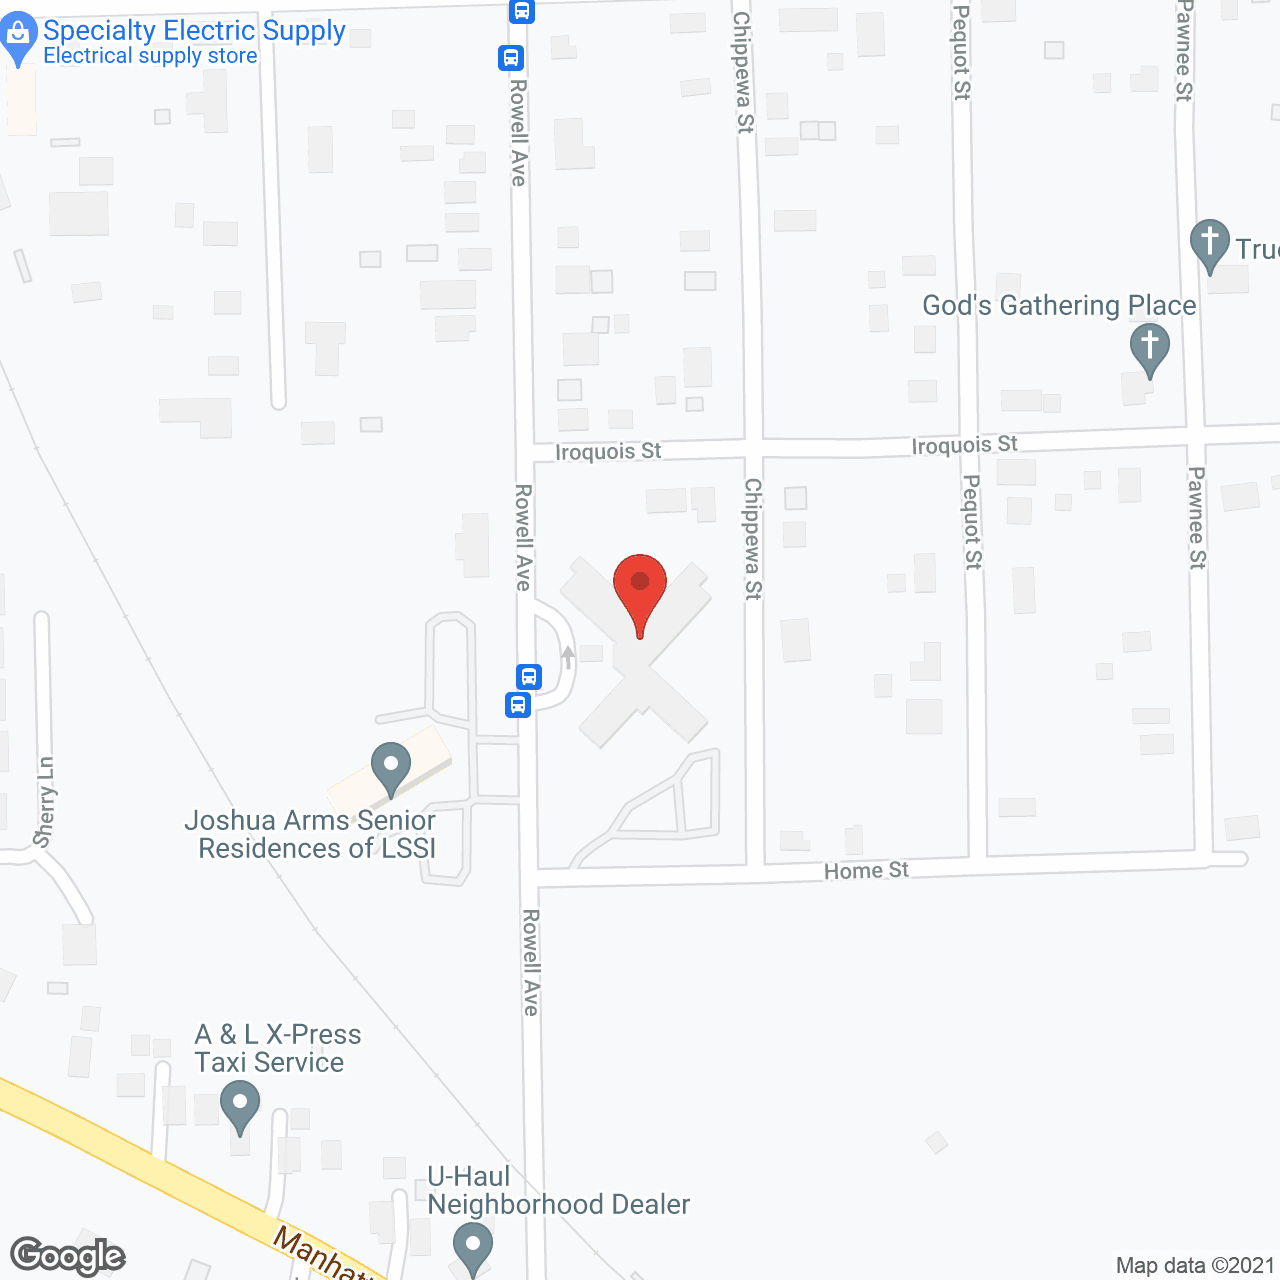 Salem Village in google map